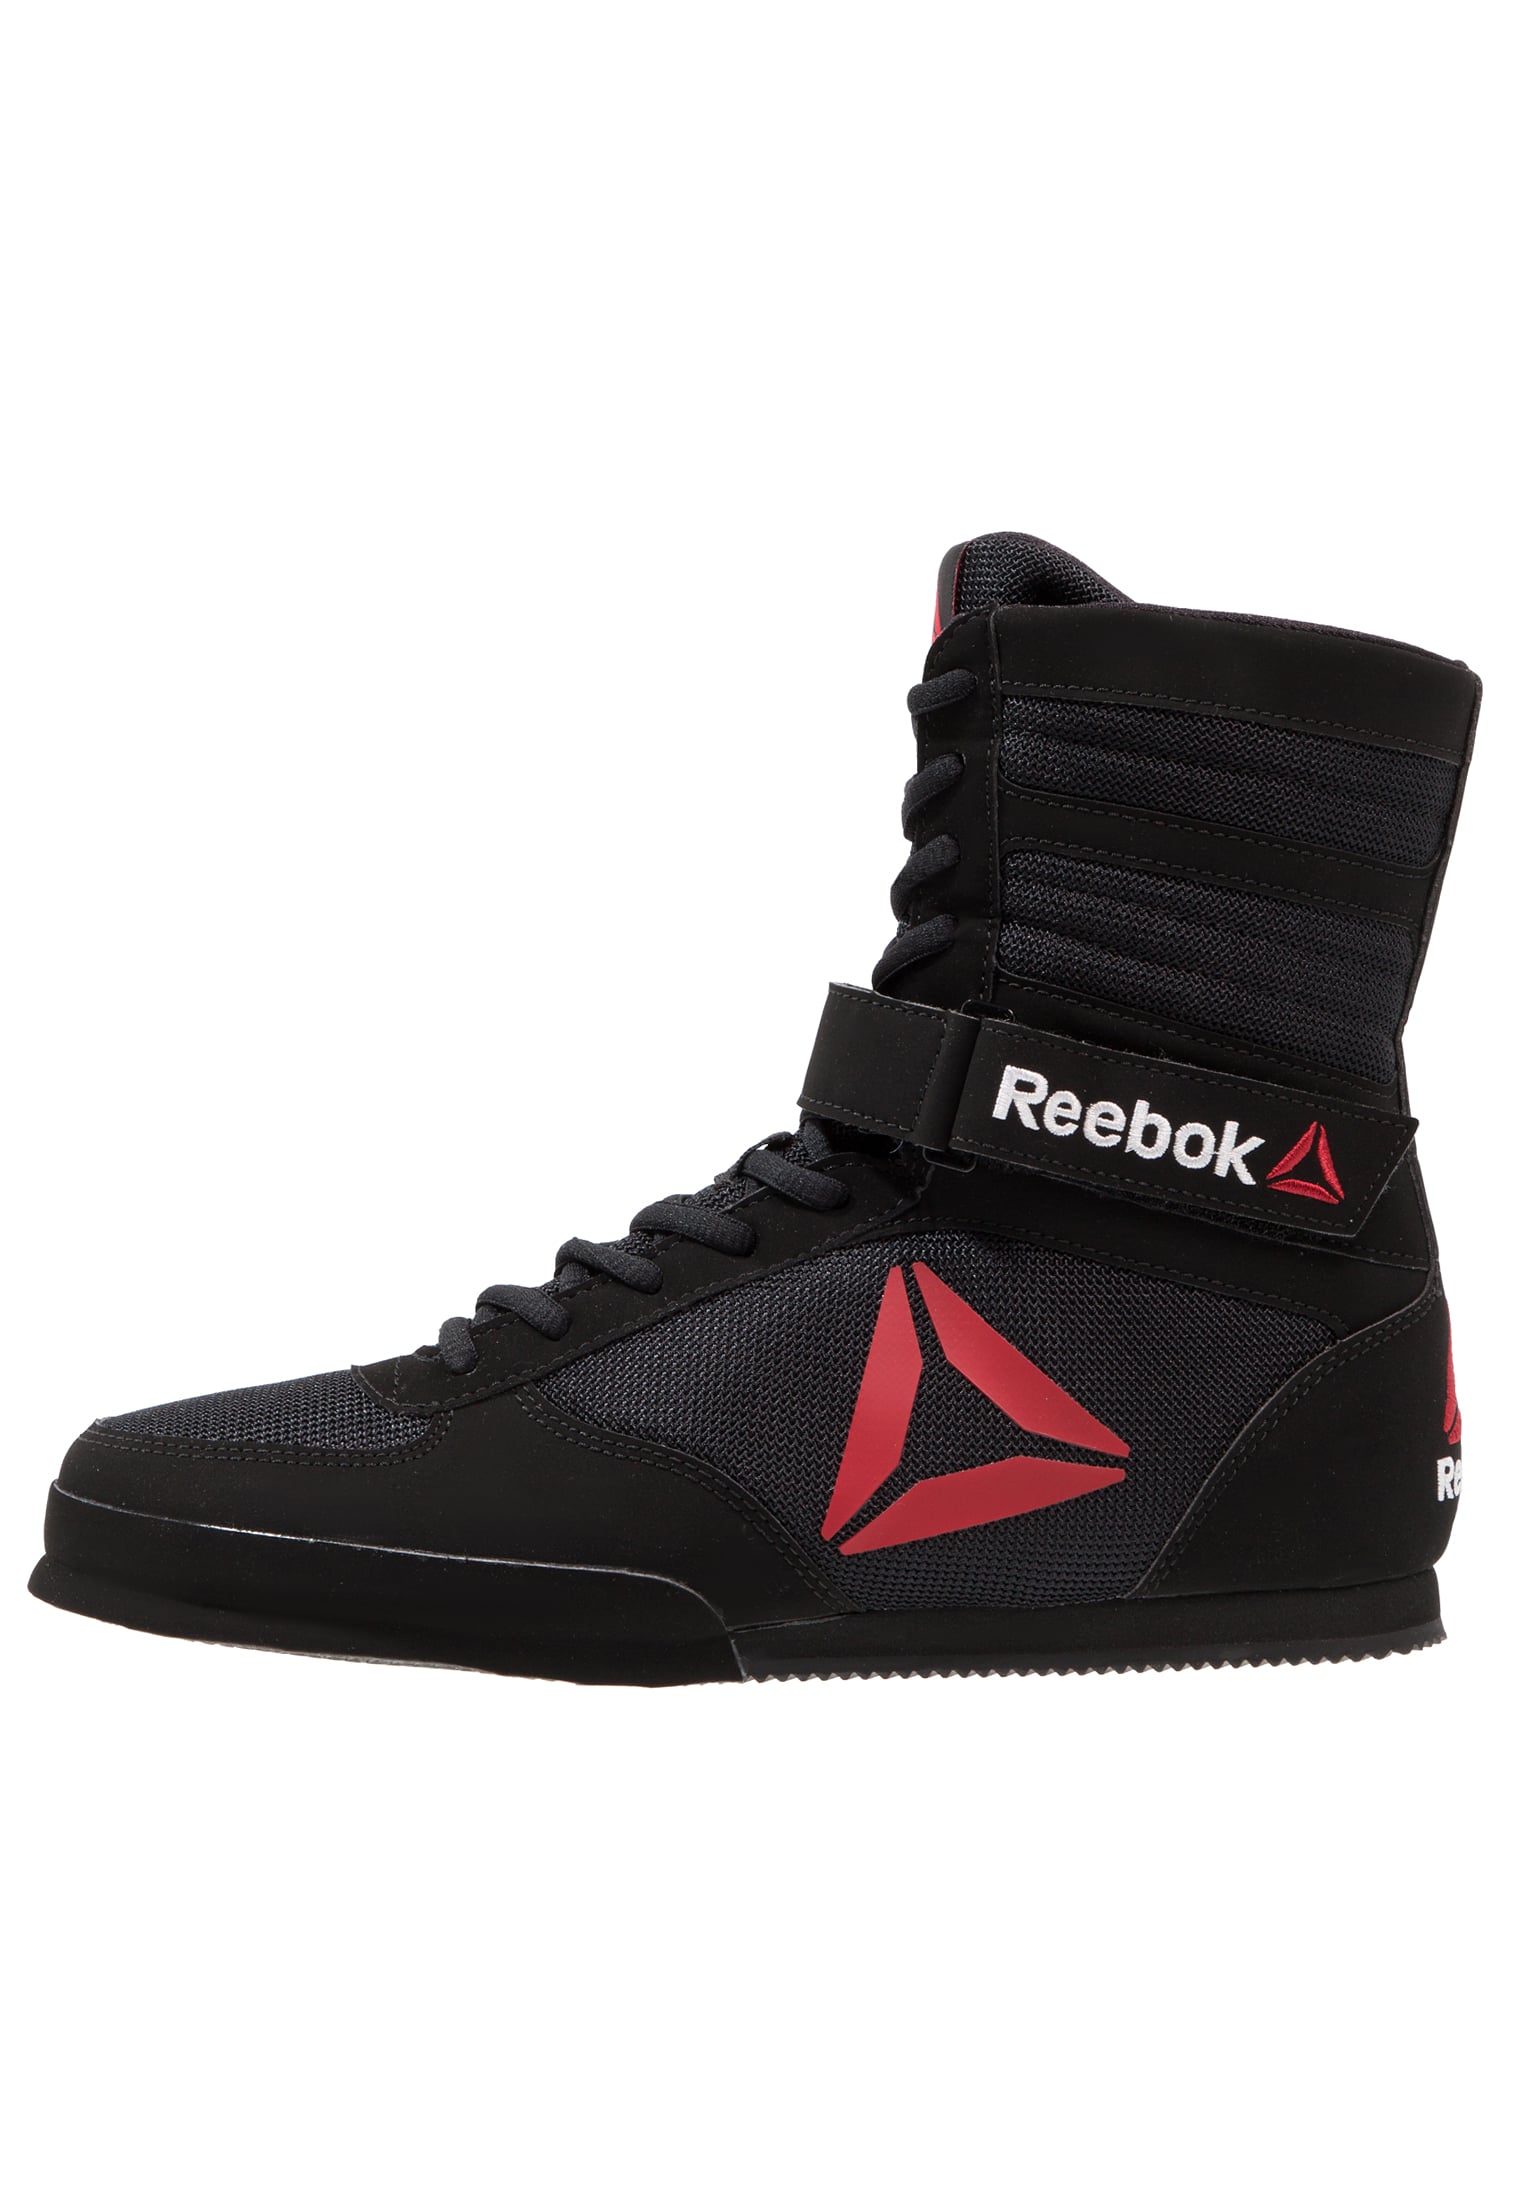 锐步(美国运动品牌) reebok boxing boot- buck - 男鞋 训练鞋-/男鞋